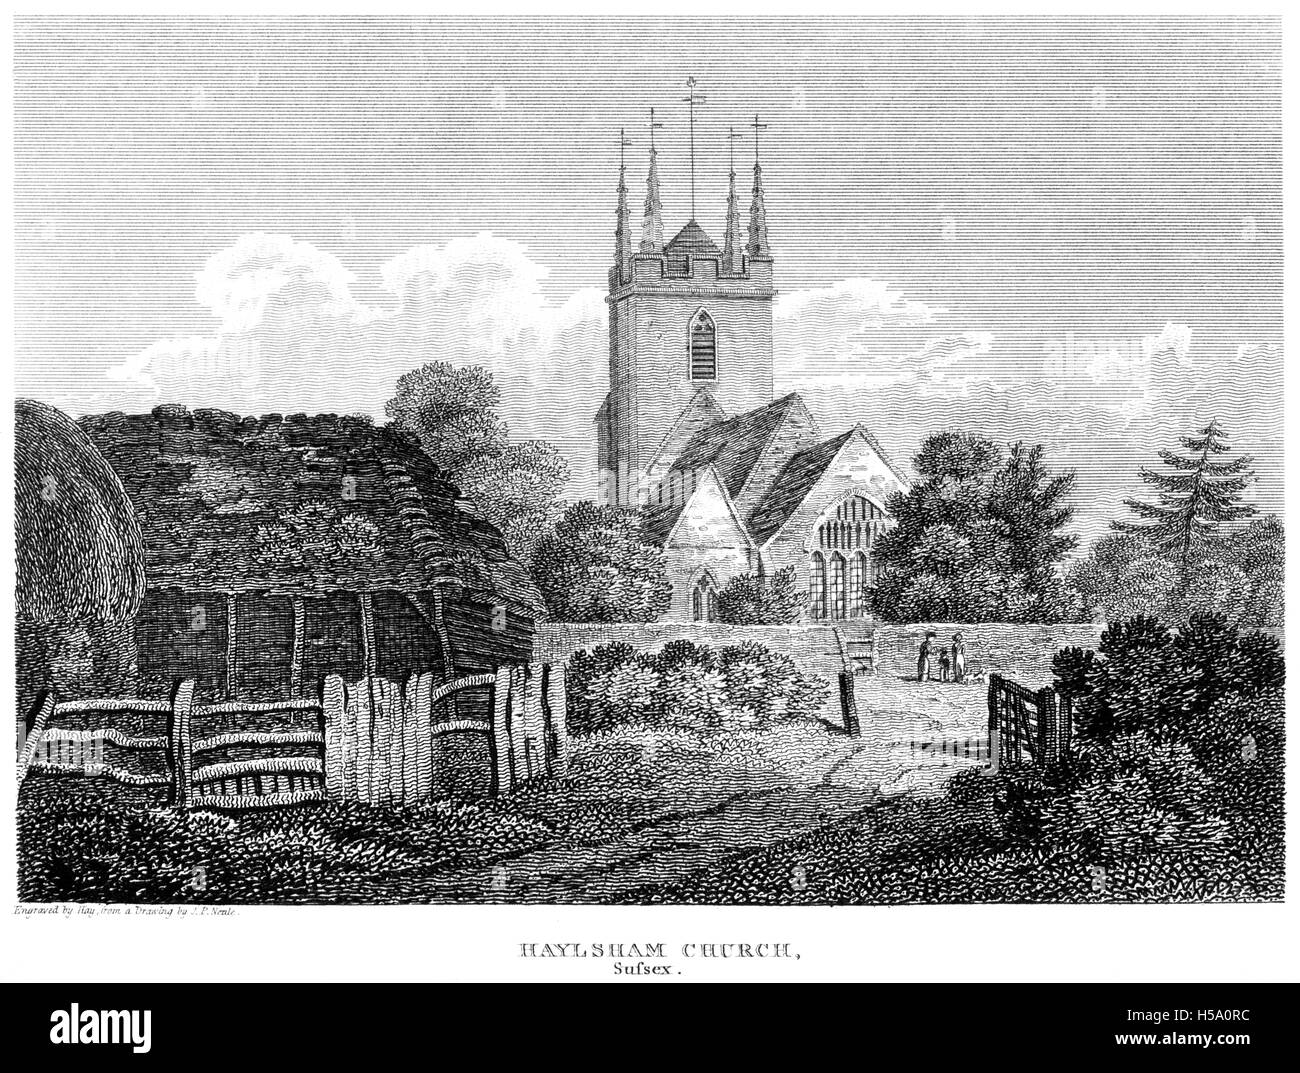 Eine Gravur der Haylsham (Hailsham) Kirche, Sussex mit hoher Auflösung aus einem Buch gescannt gedruckt im Jahre 1812. Stockfoto